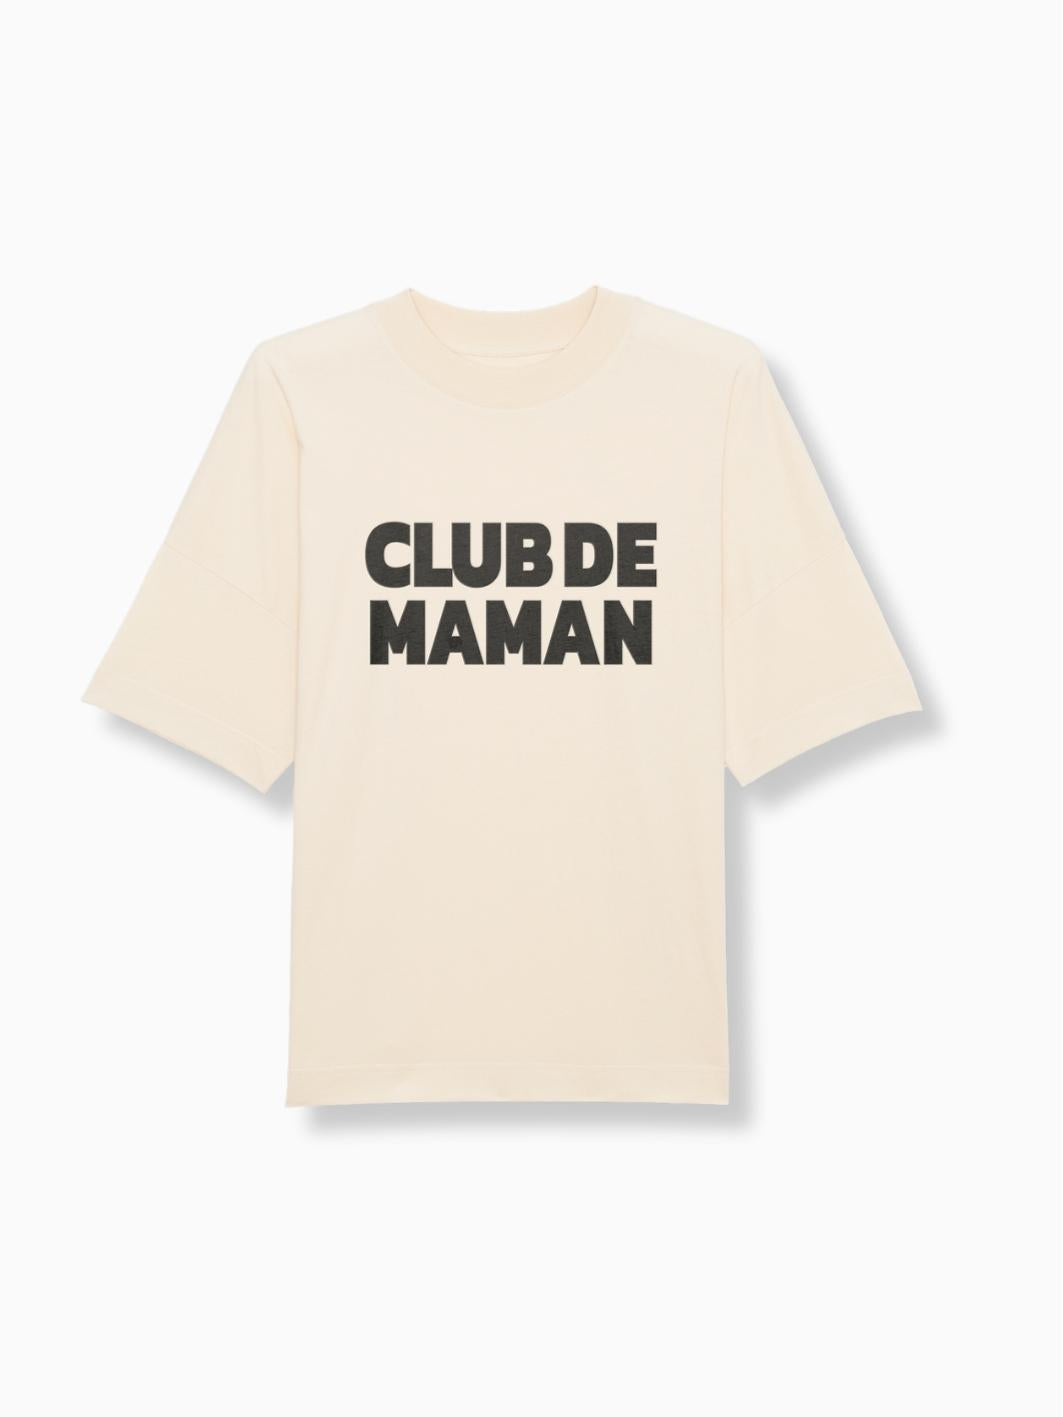 CLUB DE MAMAN - Damen T-Shirt natur - FAMVIBES 